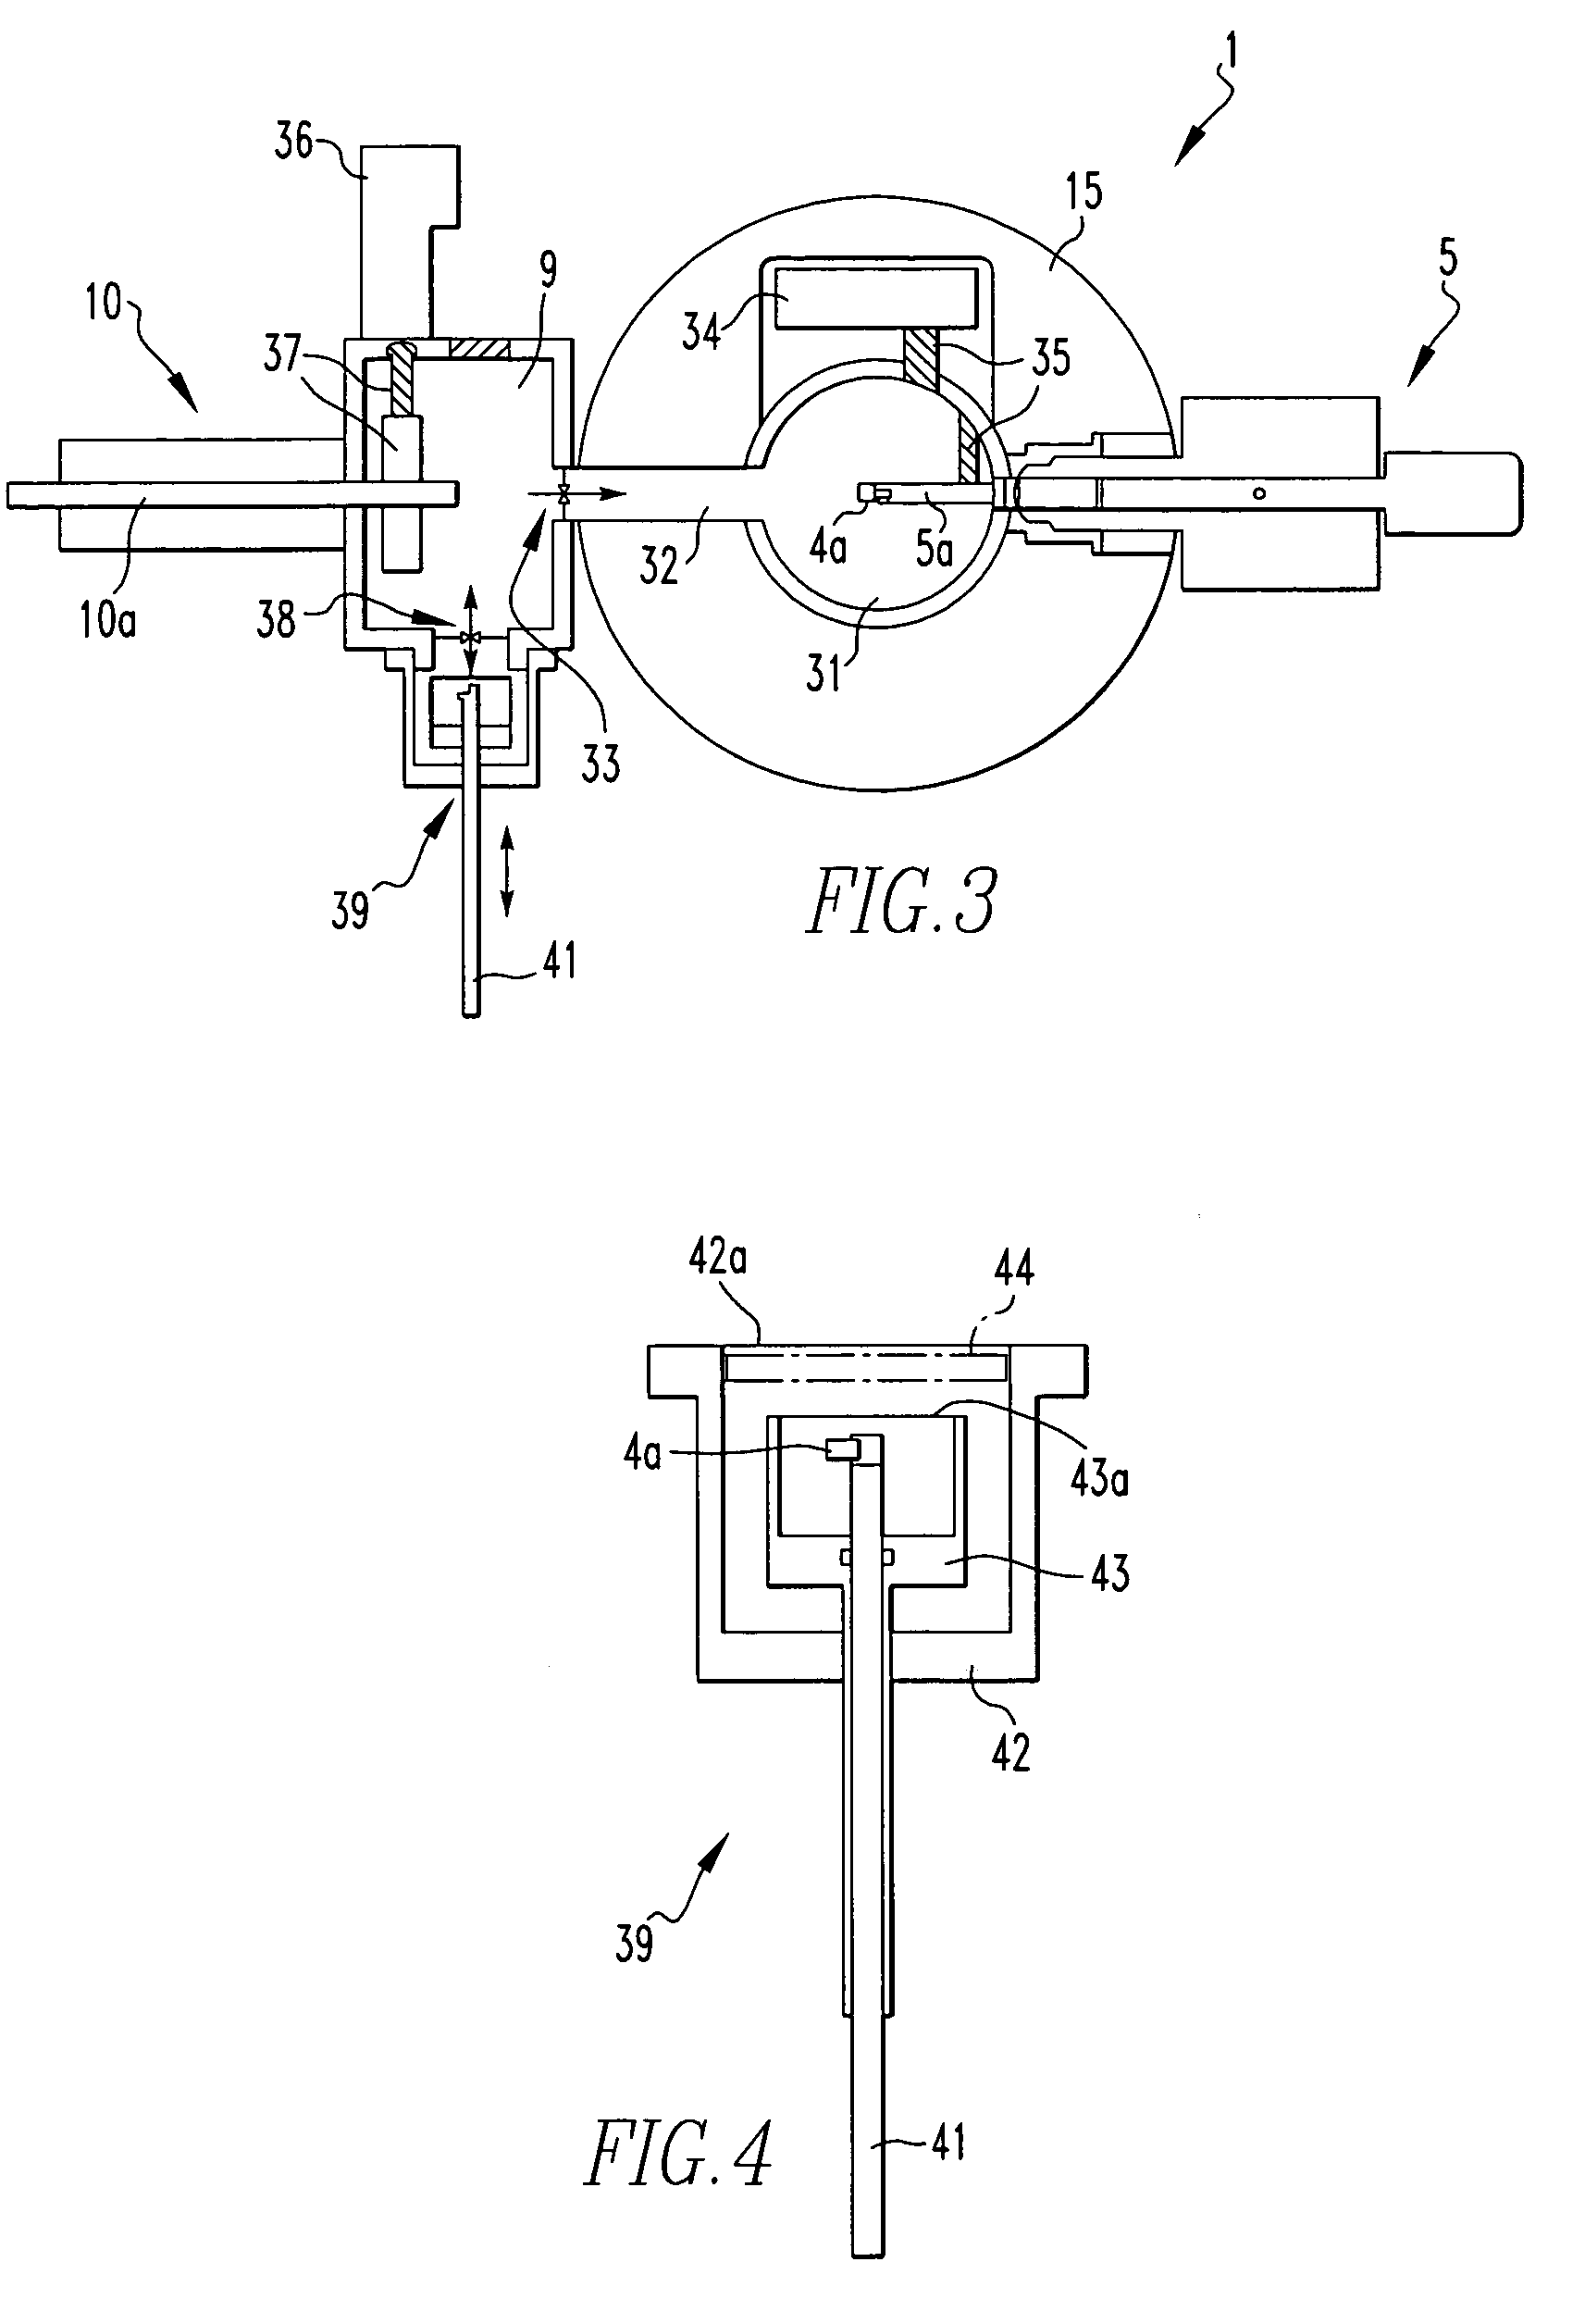 Specimen holder, observation system, and method of rotating specimen